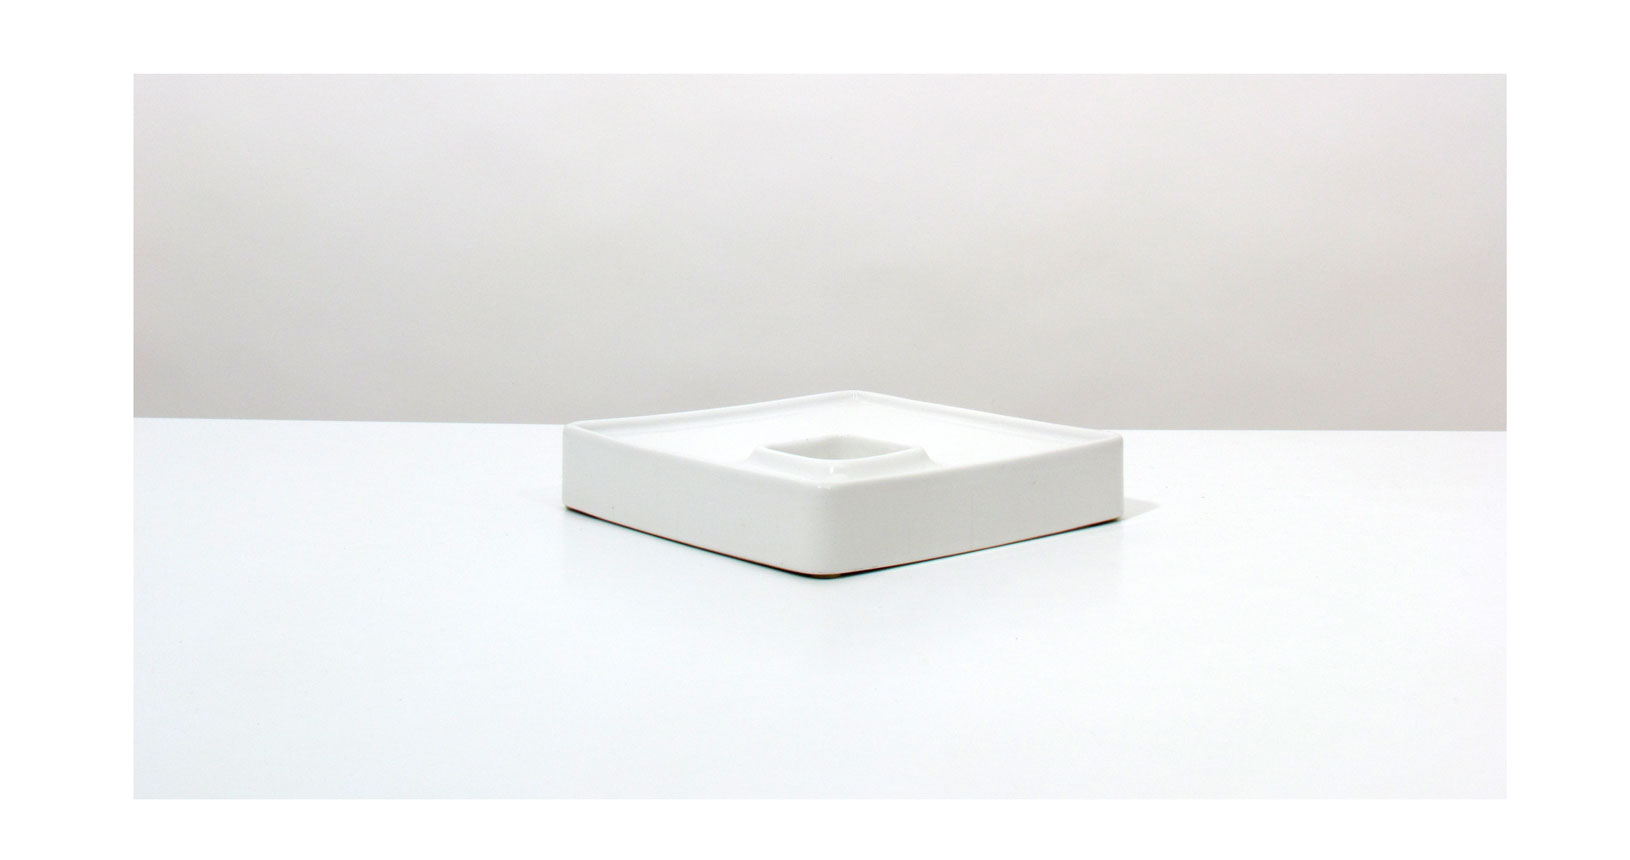 brambilla bianco white posacenere ashtray ceramica design vintage iconic design furniture